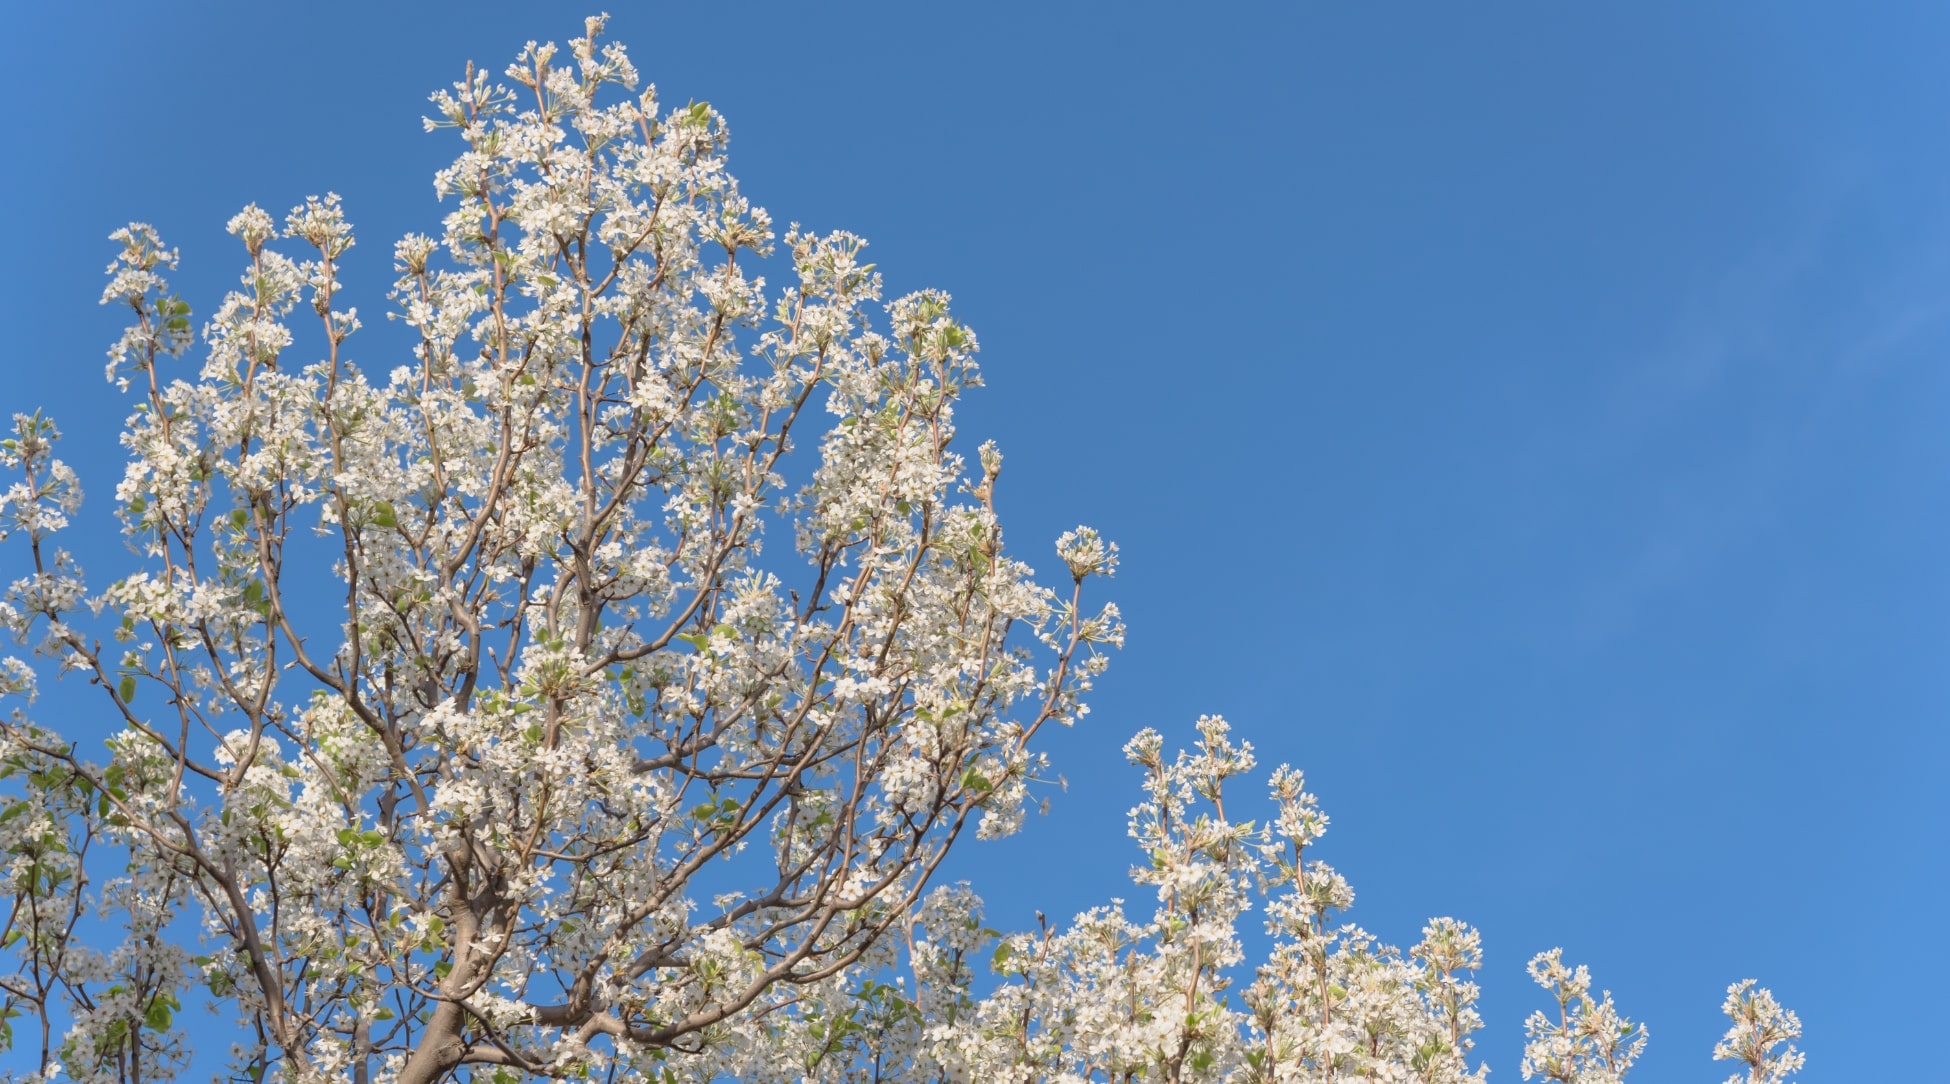 De pie contra el fondo del cielo azul, la parte superior de un árbol de flores blancas está cubierta de flores blancas.  Las ramas gruesas y retorcidas del árbol crean una vista impresionante, haciendo de este árbol una maravilla natural para la vista.